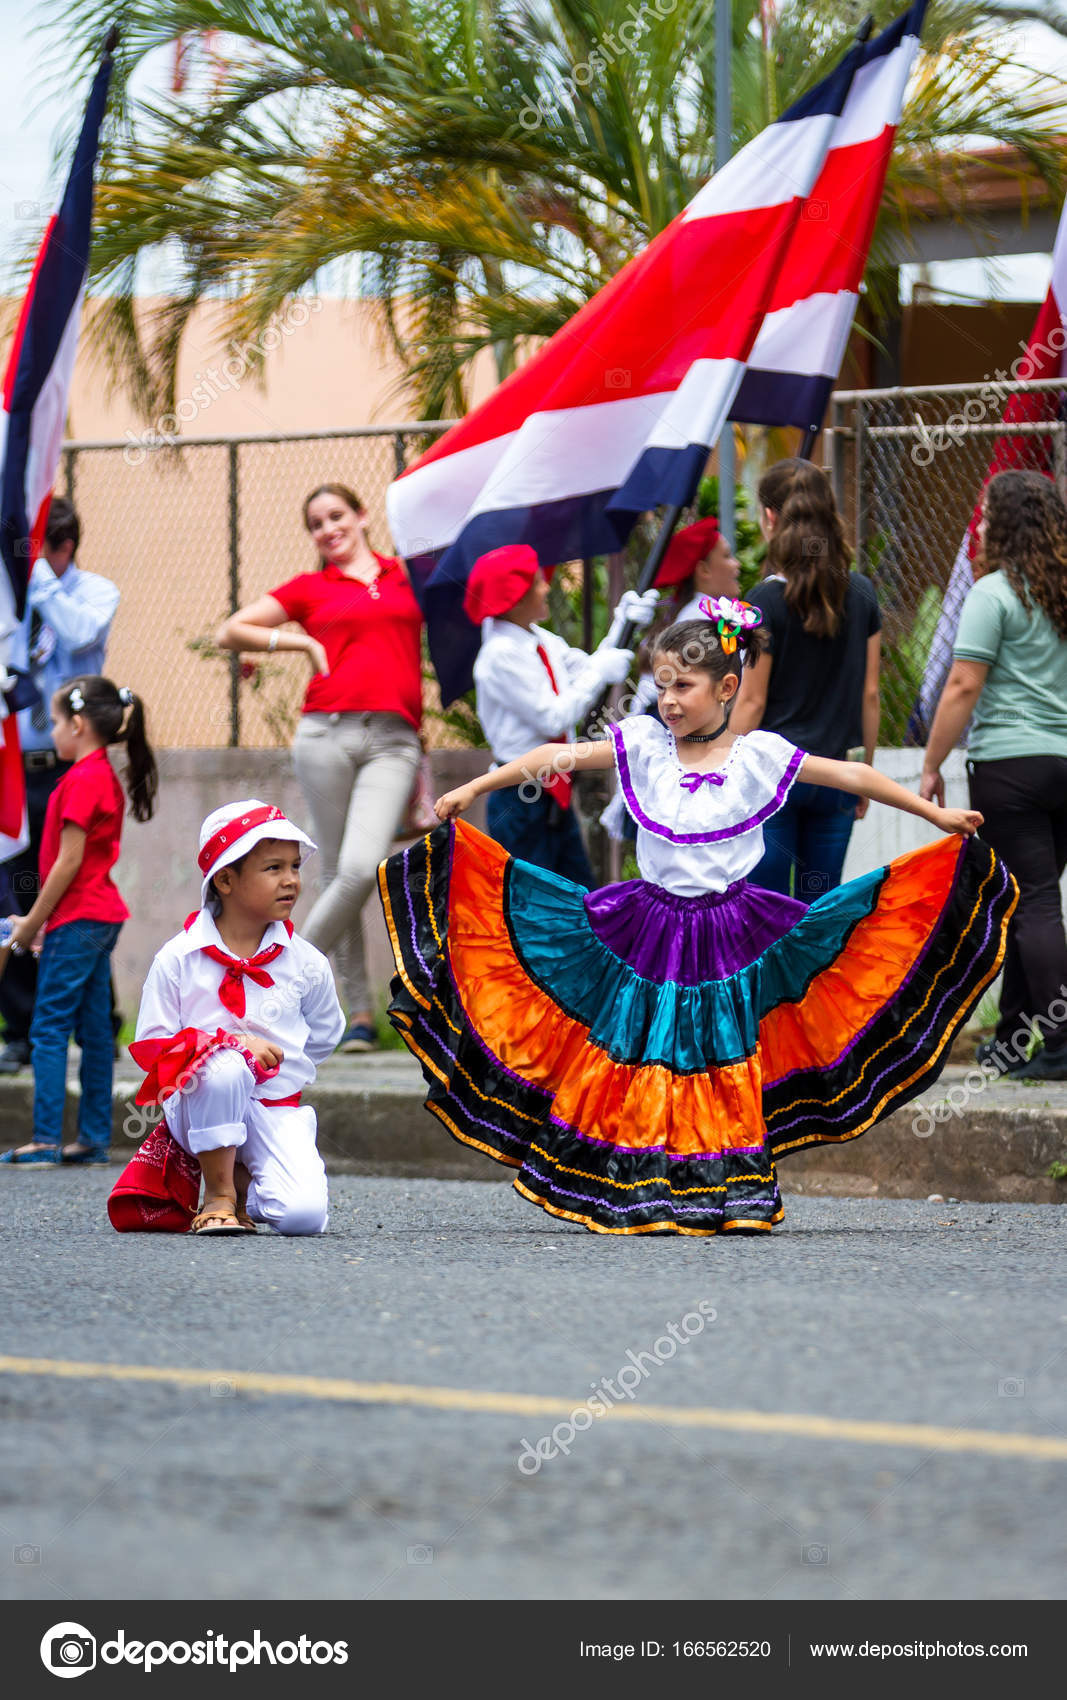 Desfile del día de la independencia, Costa Rica — Foto editorial de stock © wollertz #166562520